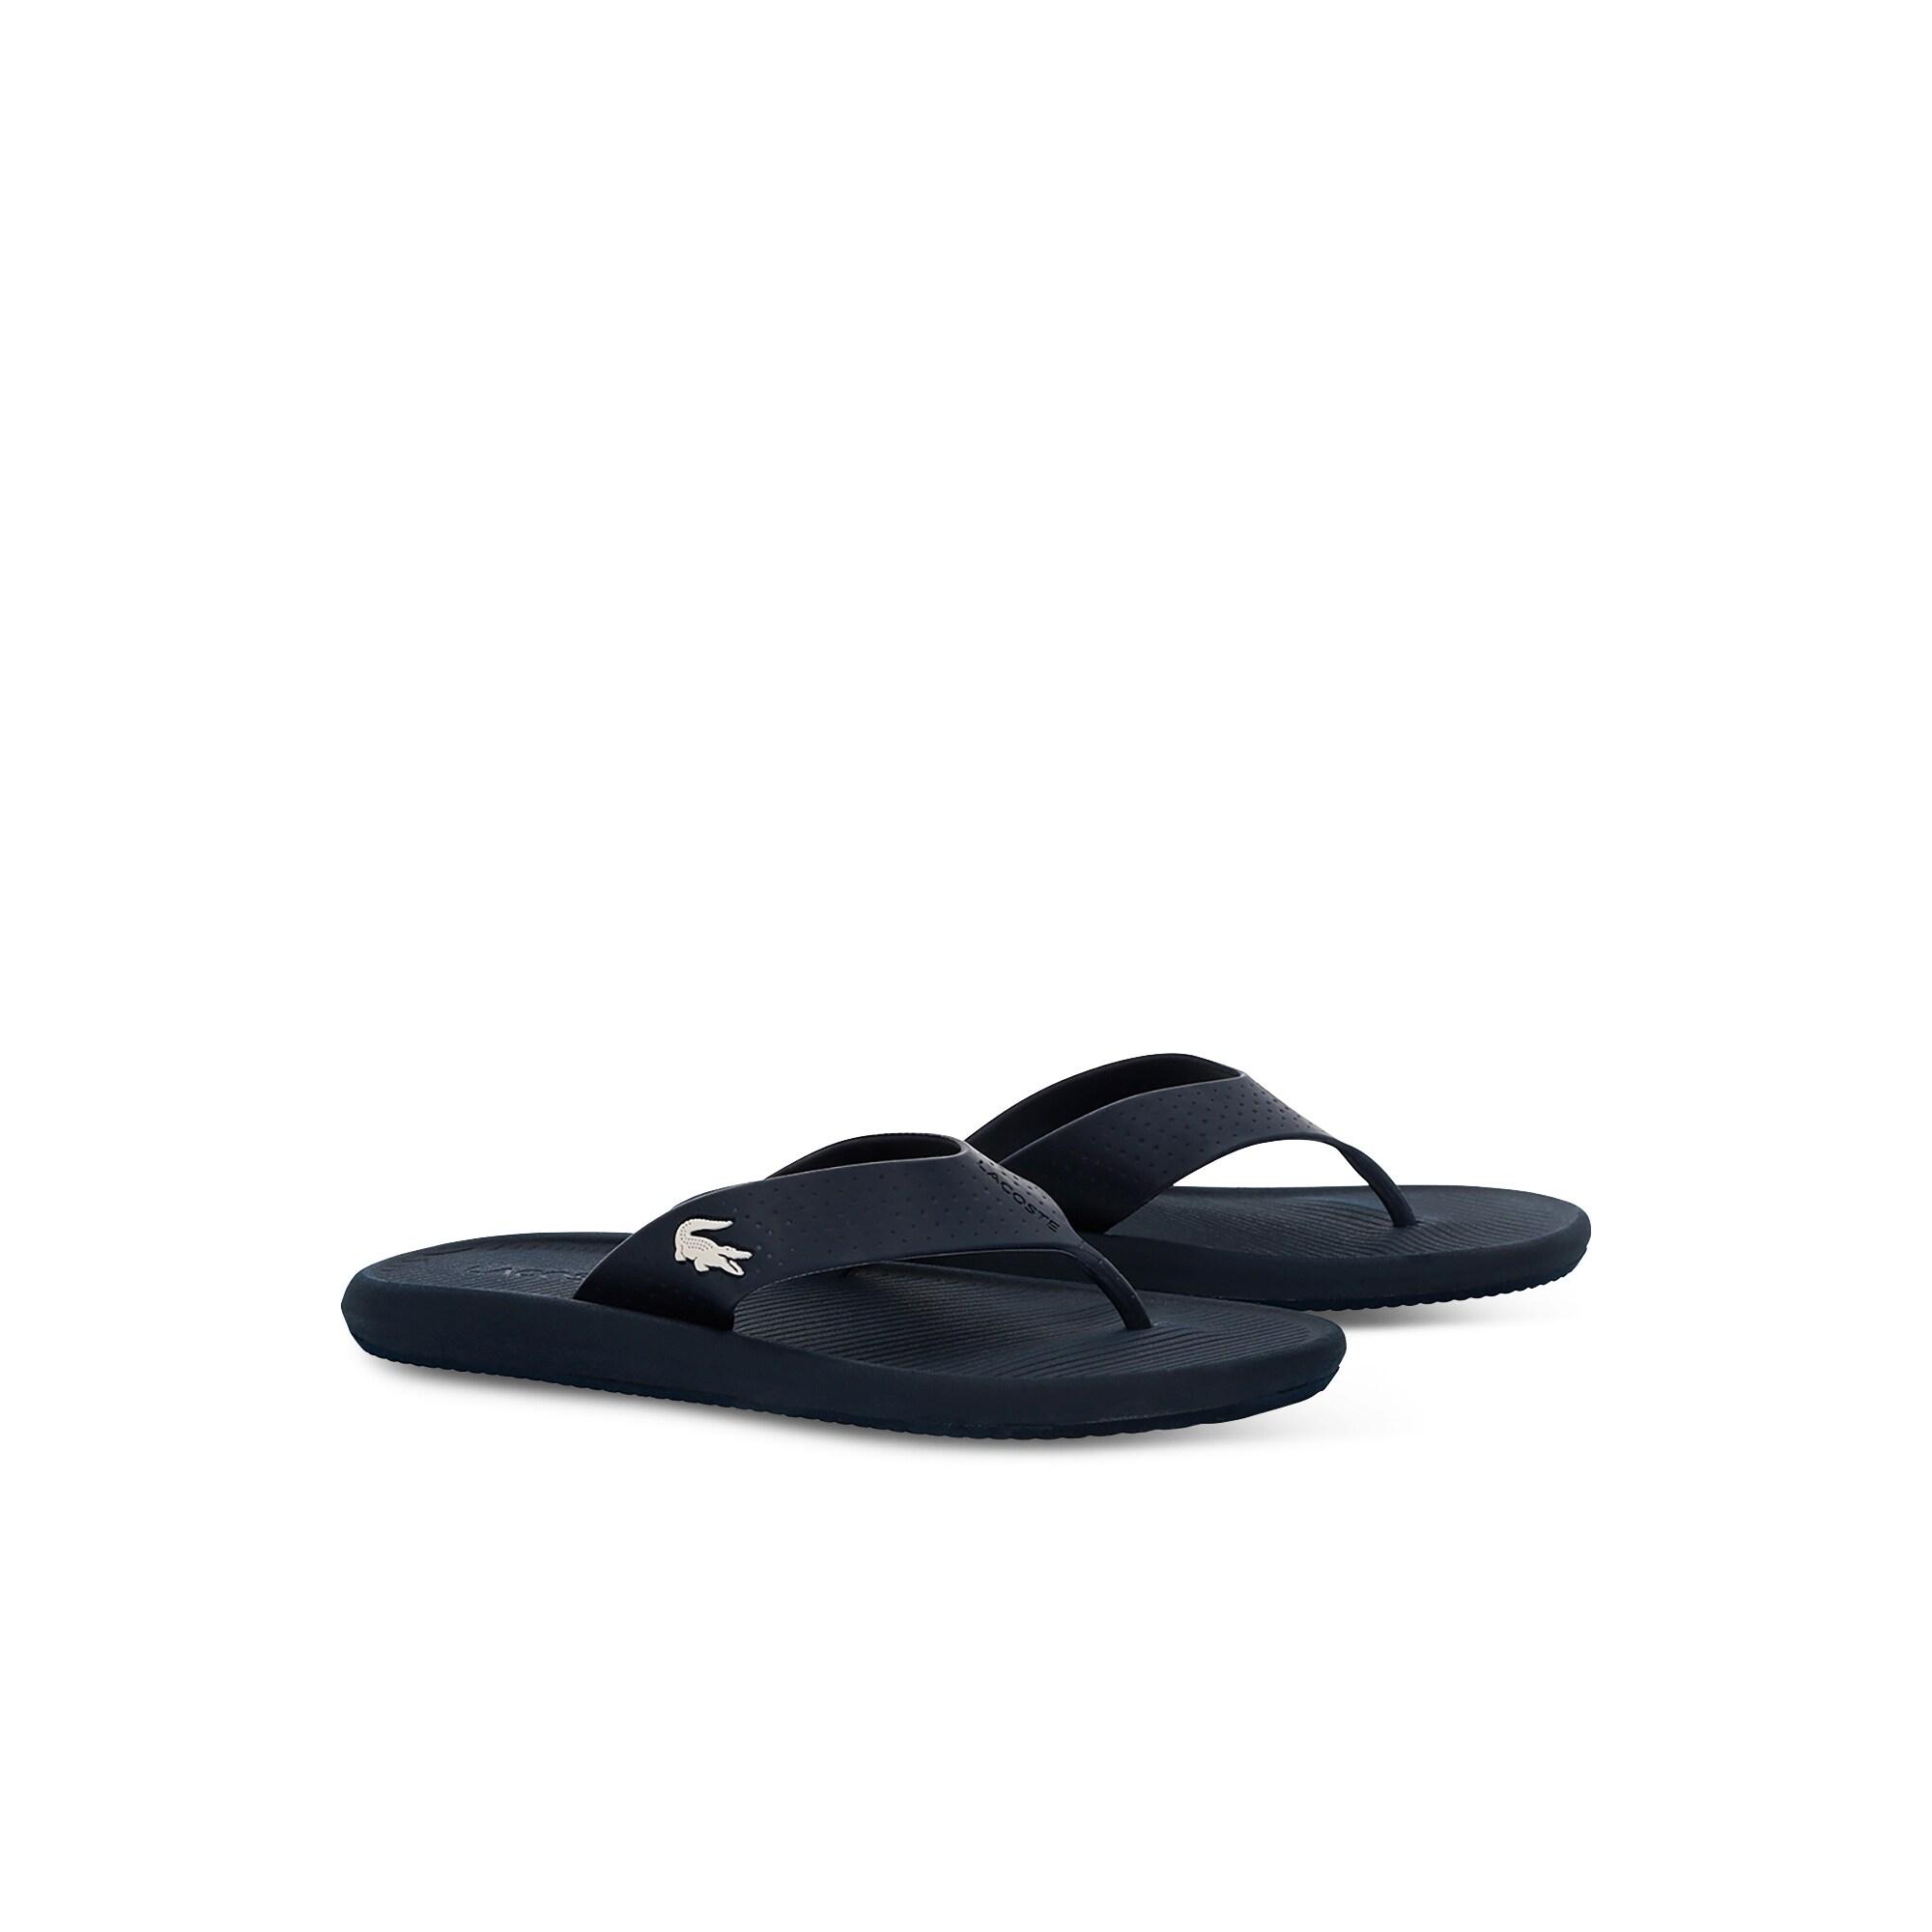 Lacoste Croco Sandal 219 1 Cma Erkek Lacivert - Beyaz Terlik. 3